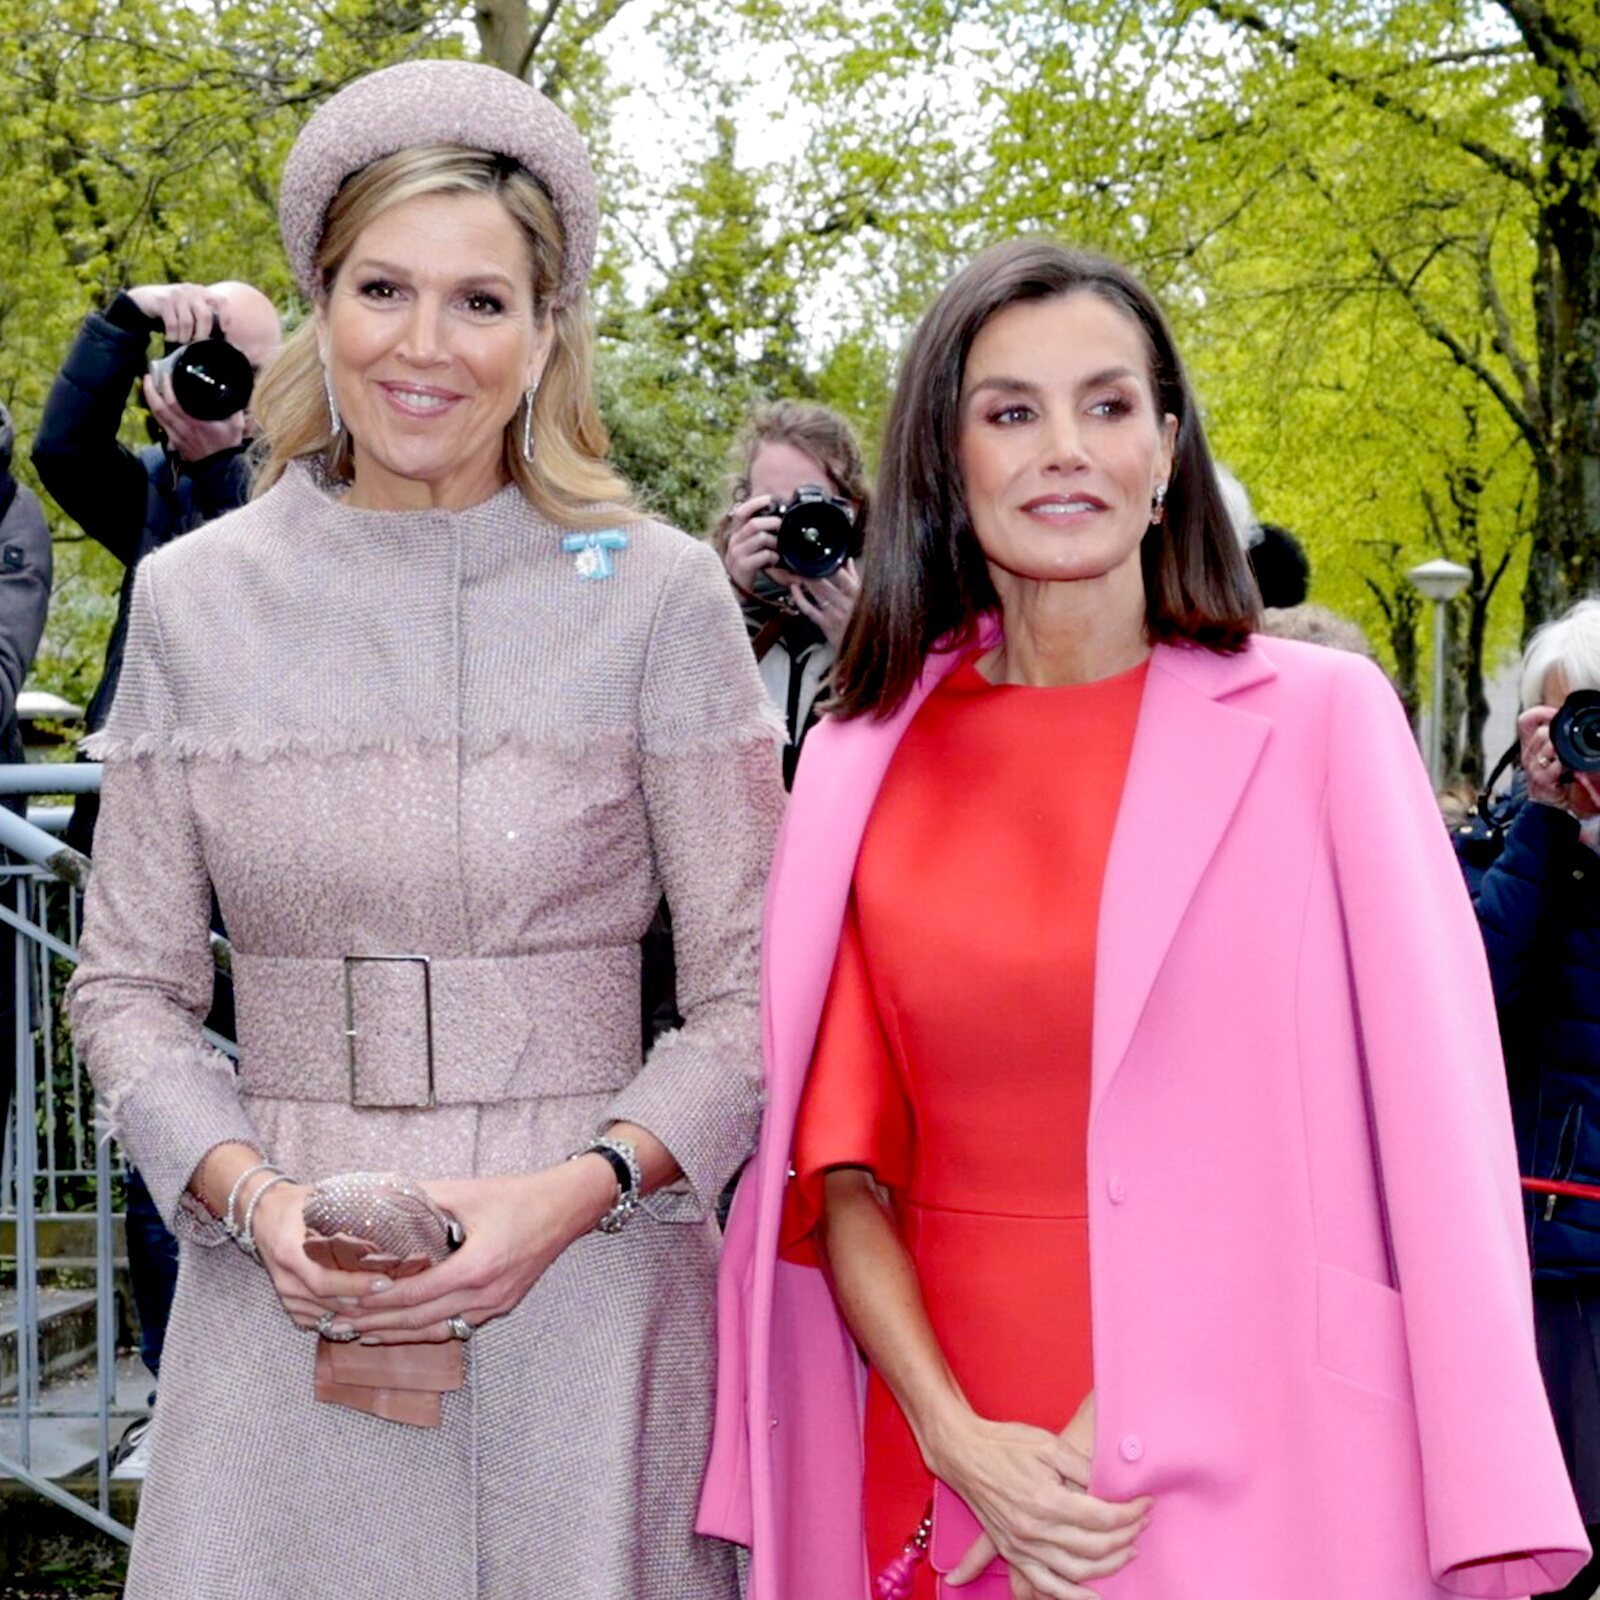 rosa y rojo, la combinación de la reina letizia que esconde otro guiño a la moda española (aunque no lo parezca)